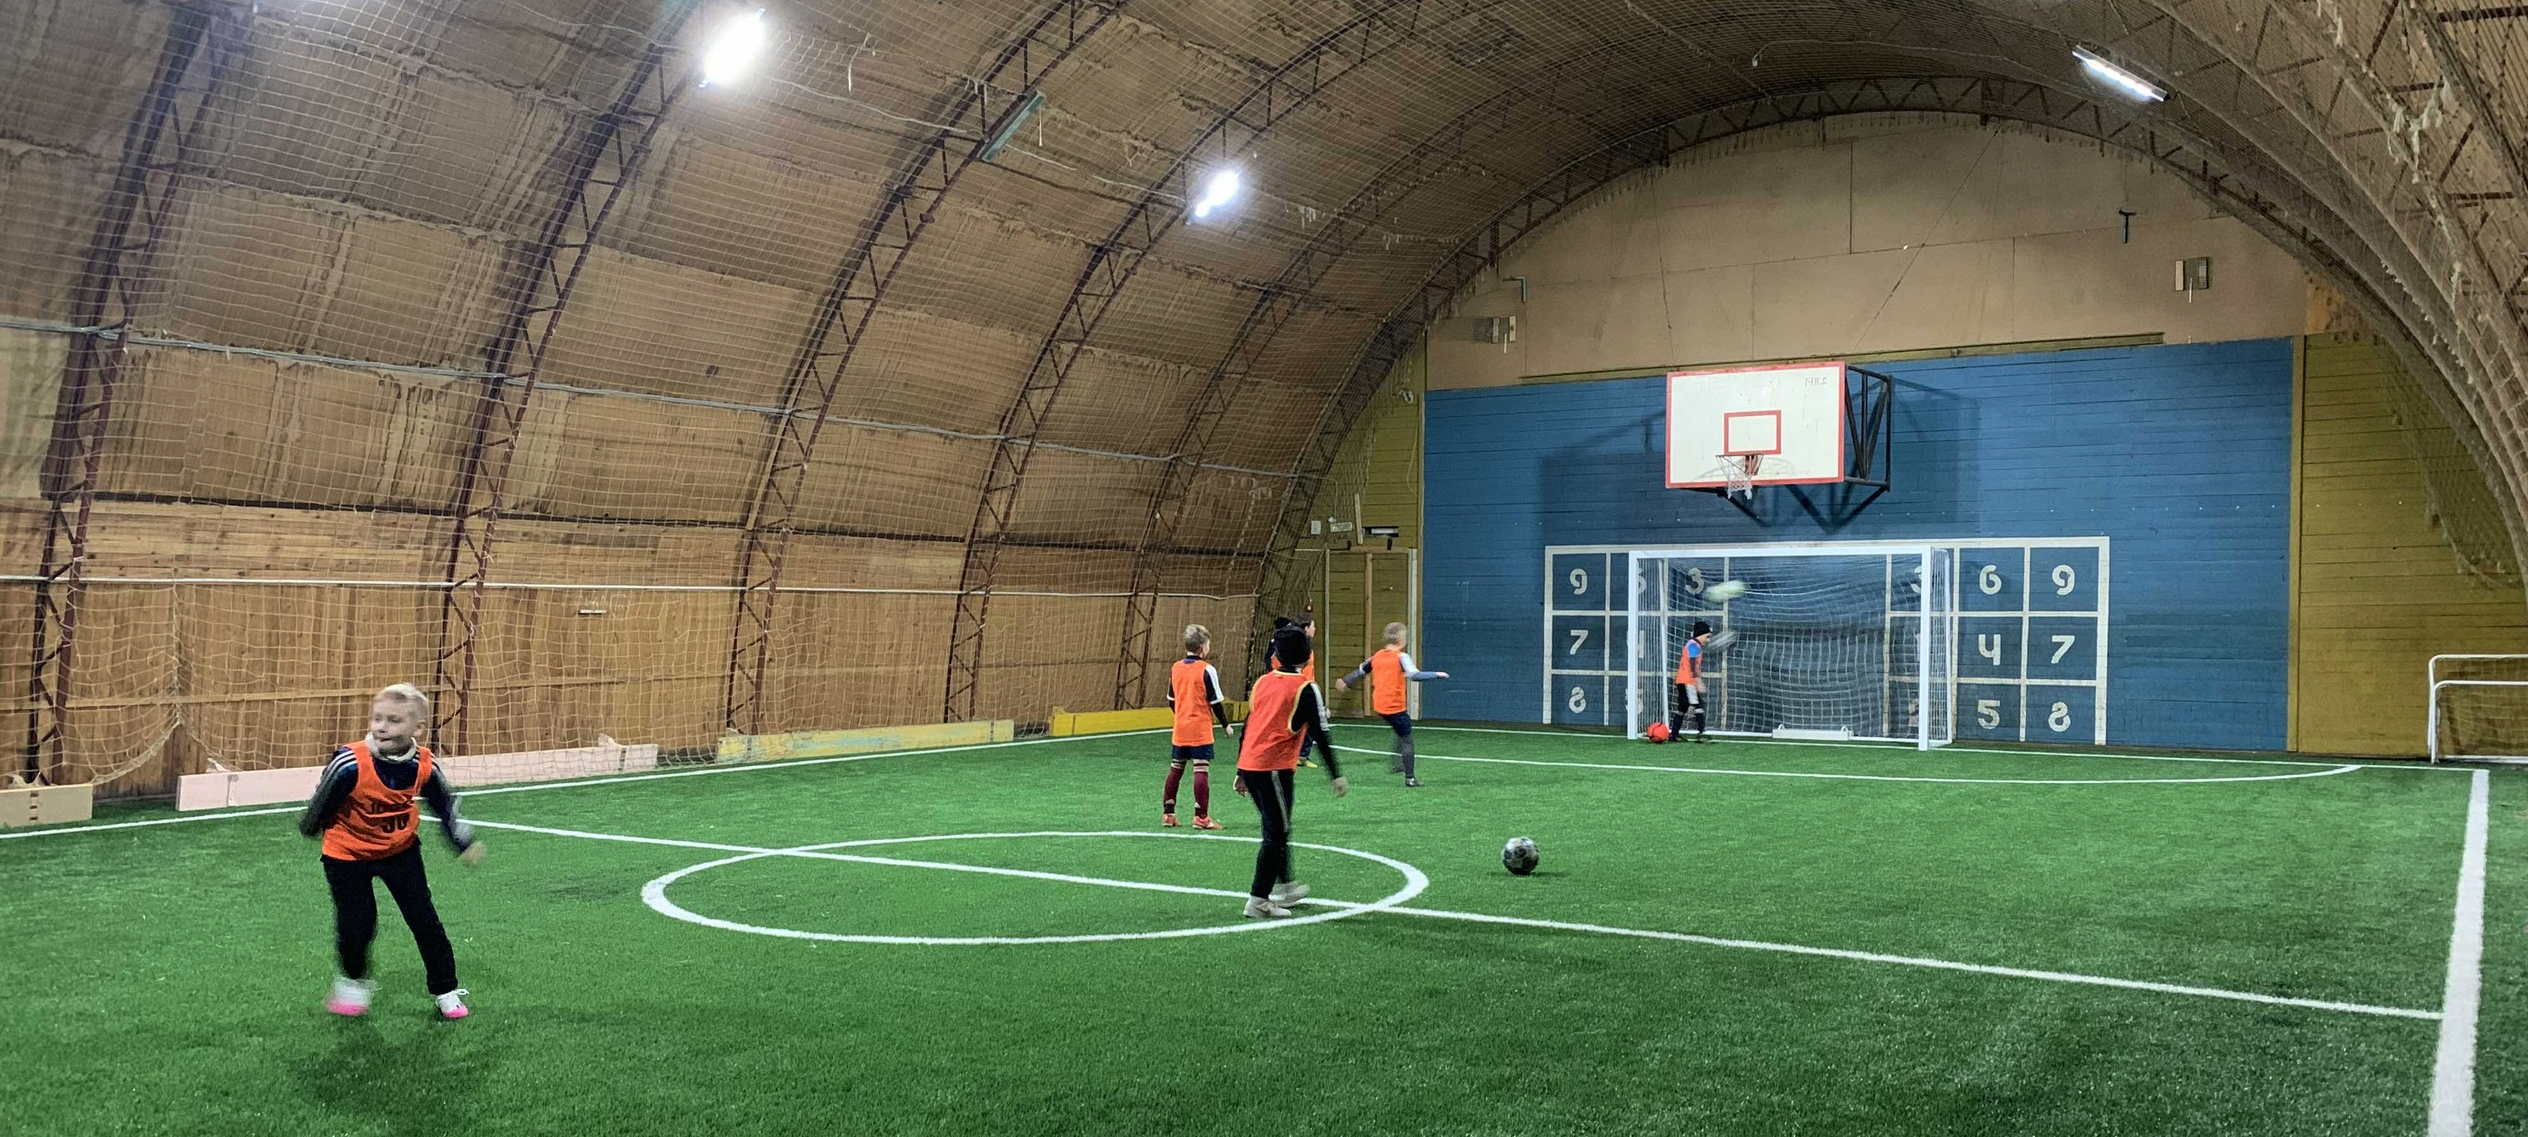 Новое искусственное футбольное поле появилось у спортивной школы в Петрозаводске